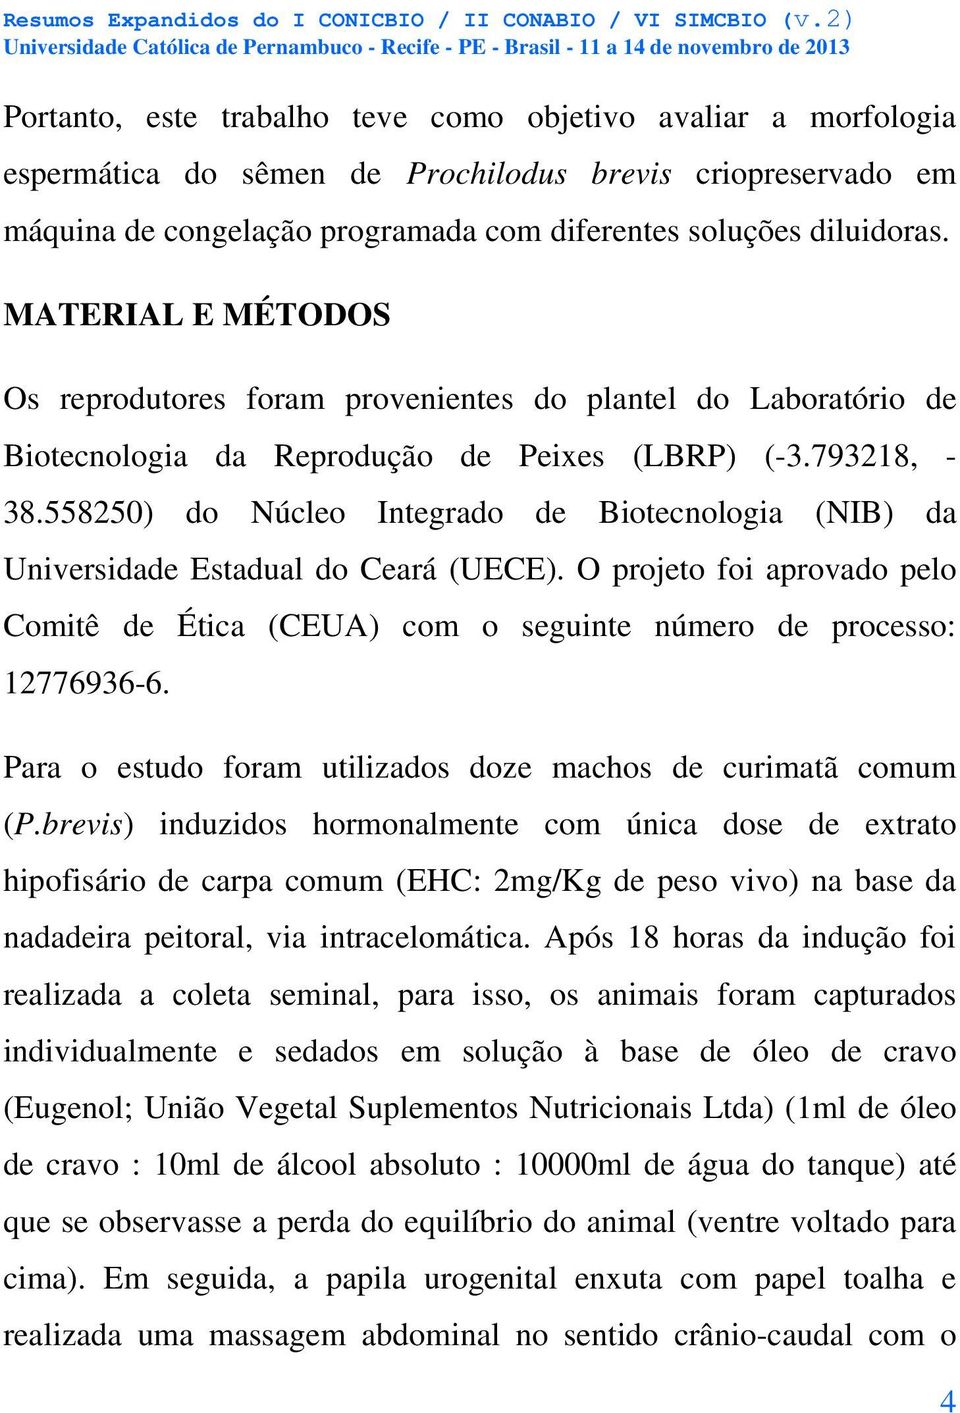 558250) do Núcleo Integrado de Biotecnologia (NIB) da Universidade Estadual do Ceará (UECE). O projeto foi aprovado pelo Comitê de Ética (CEUA) com o seguinte número de processo: 12776936-6.